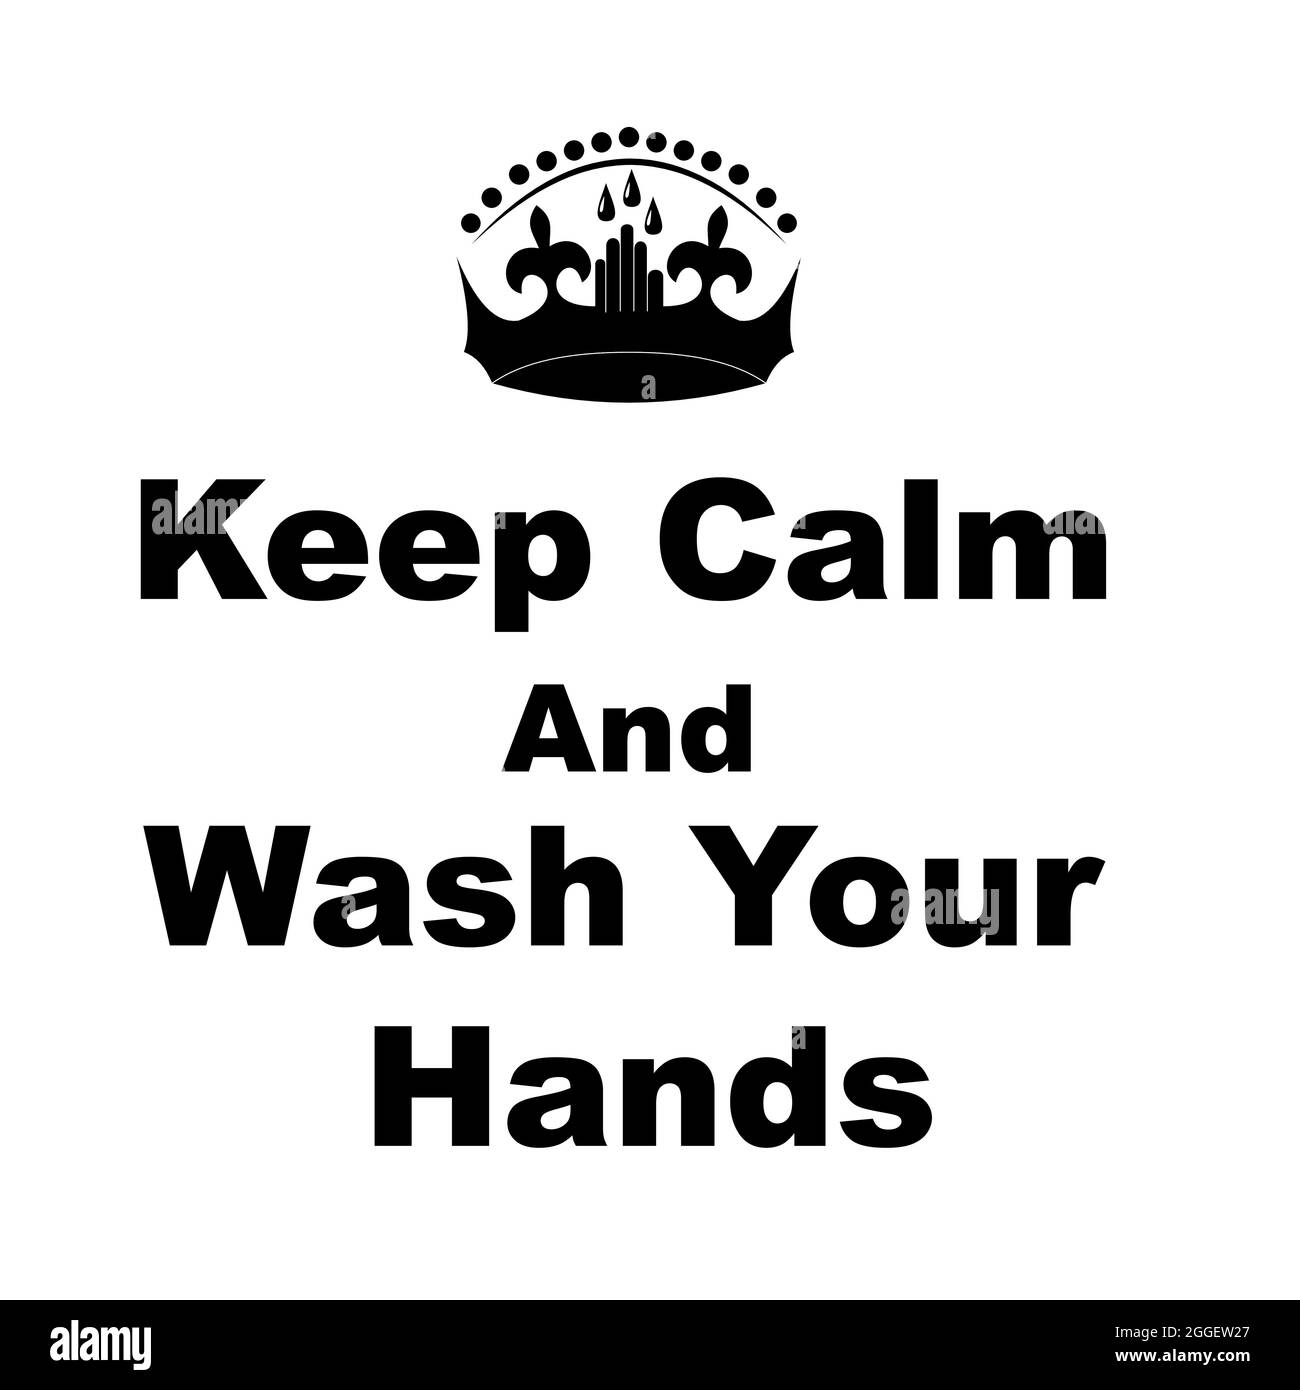 Bleiben Sie ruhig und waschen Sie sich die Hände. Motivationshygiene-Poster-Sweatshirt oder T-Shirt-Print. Vektorkalligraphie. Seife entfernt Bakterien, Mikroben, Mikroorgani Stock Vektor